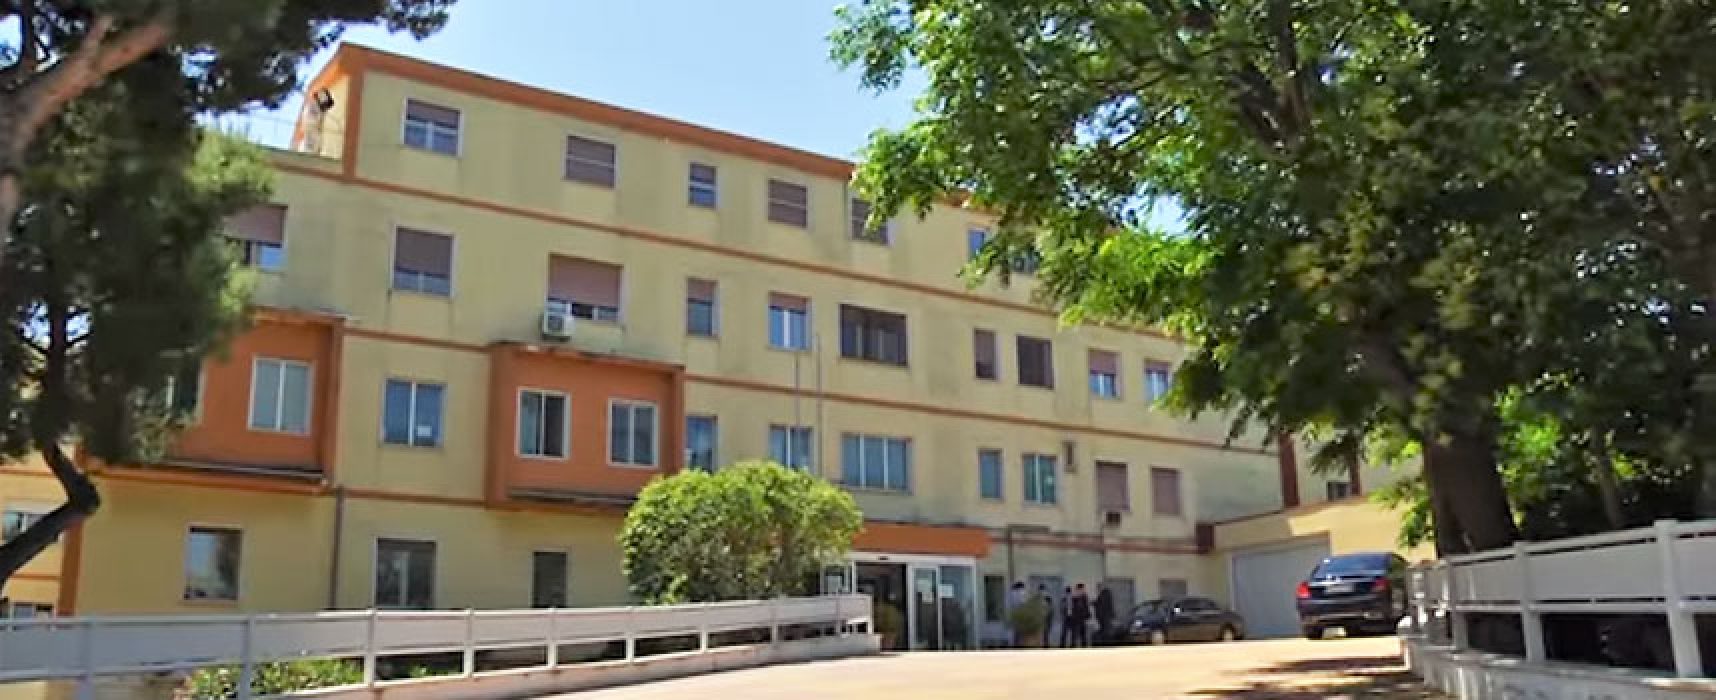 Covid Hospital Bisceglie, Fials: “Necessario garantire normali attività ospedaliere”